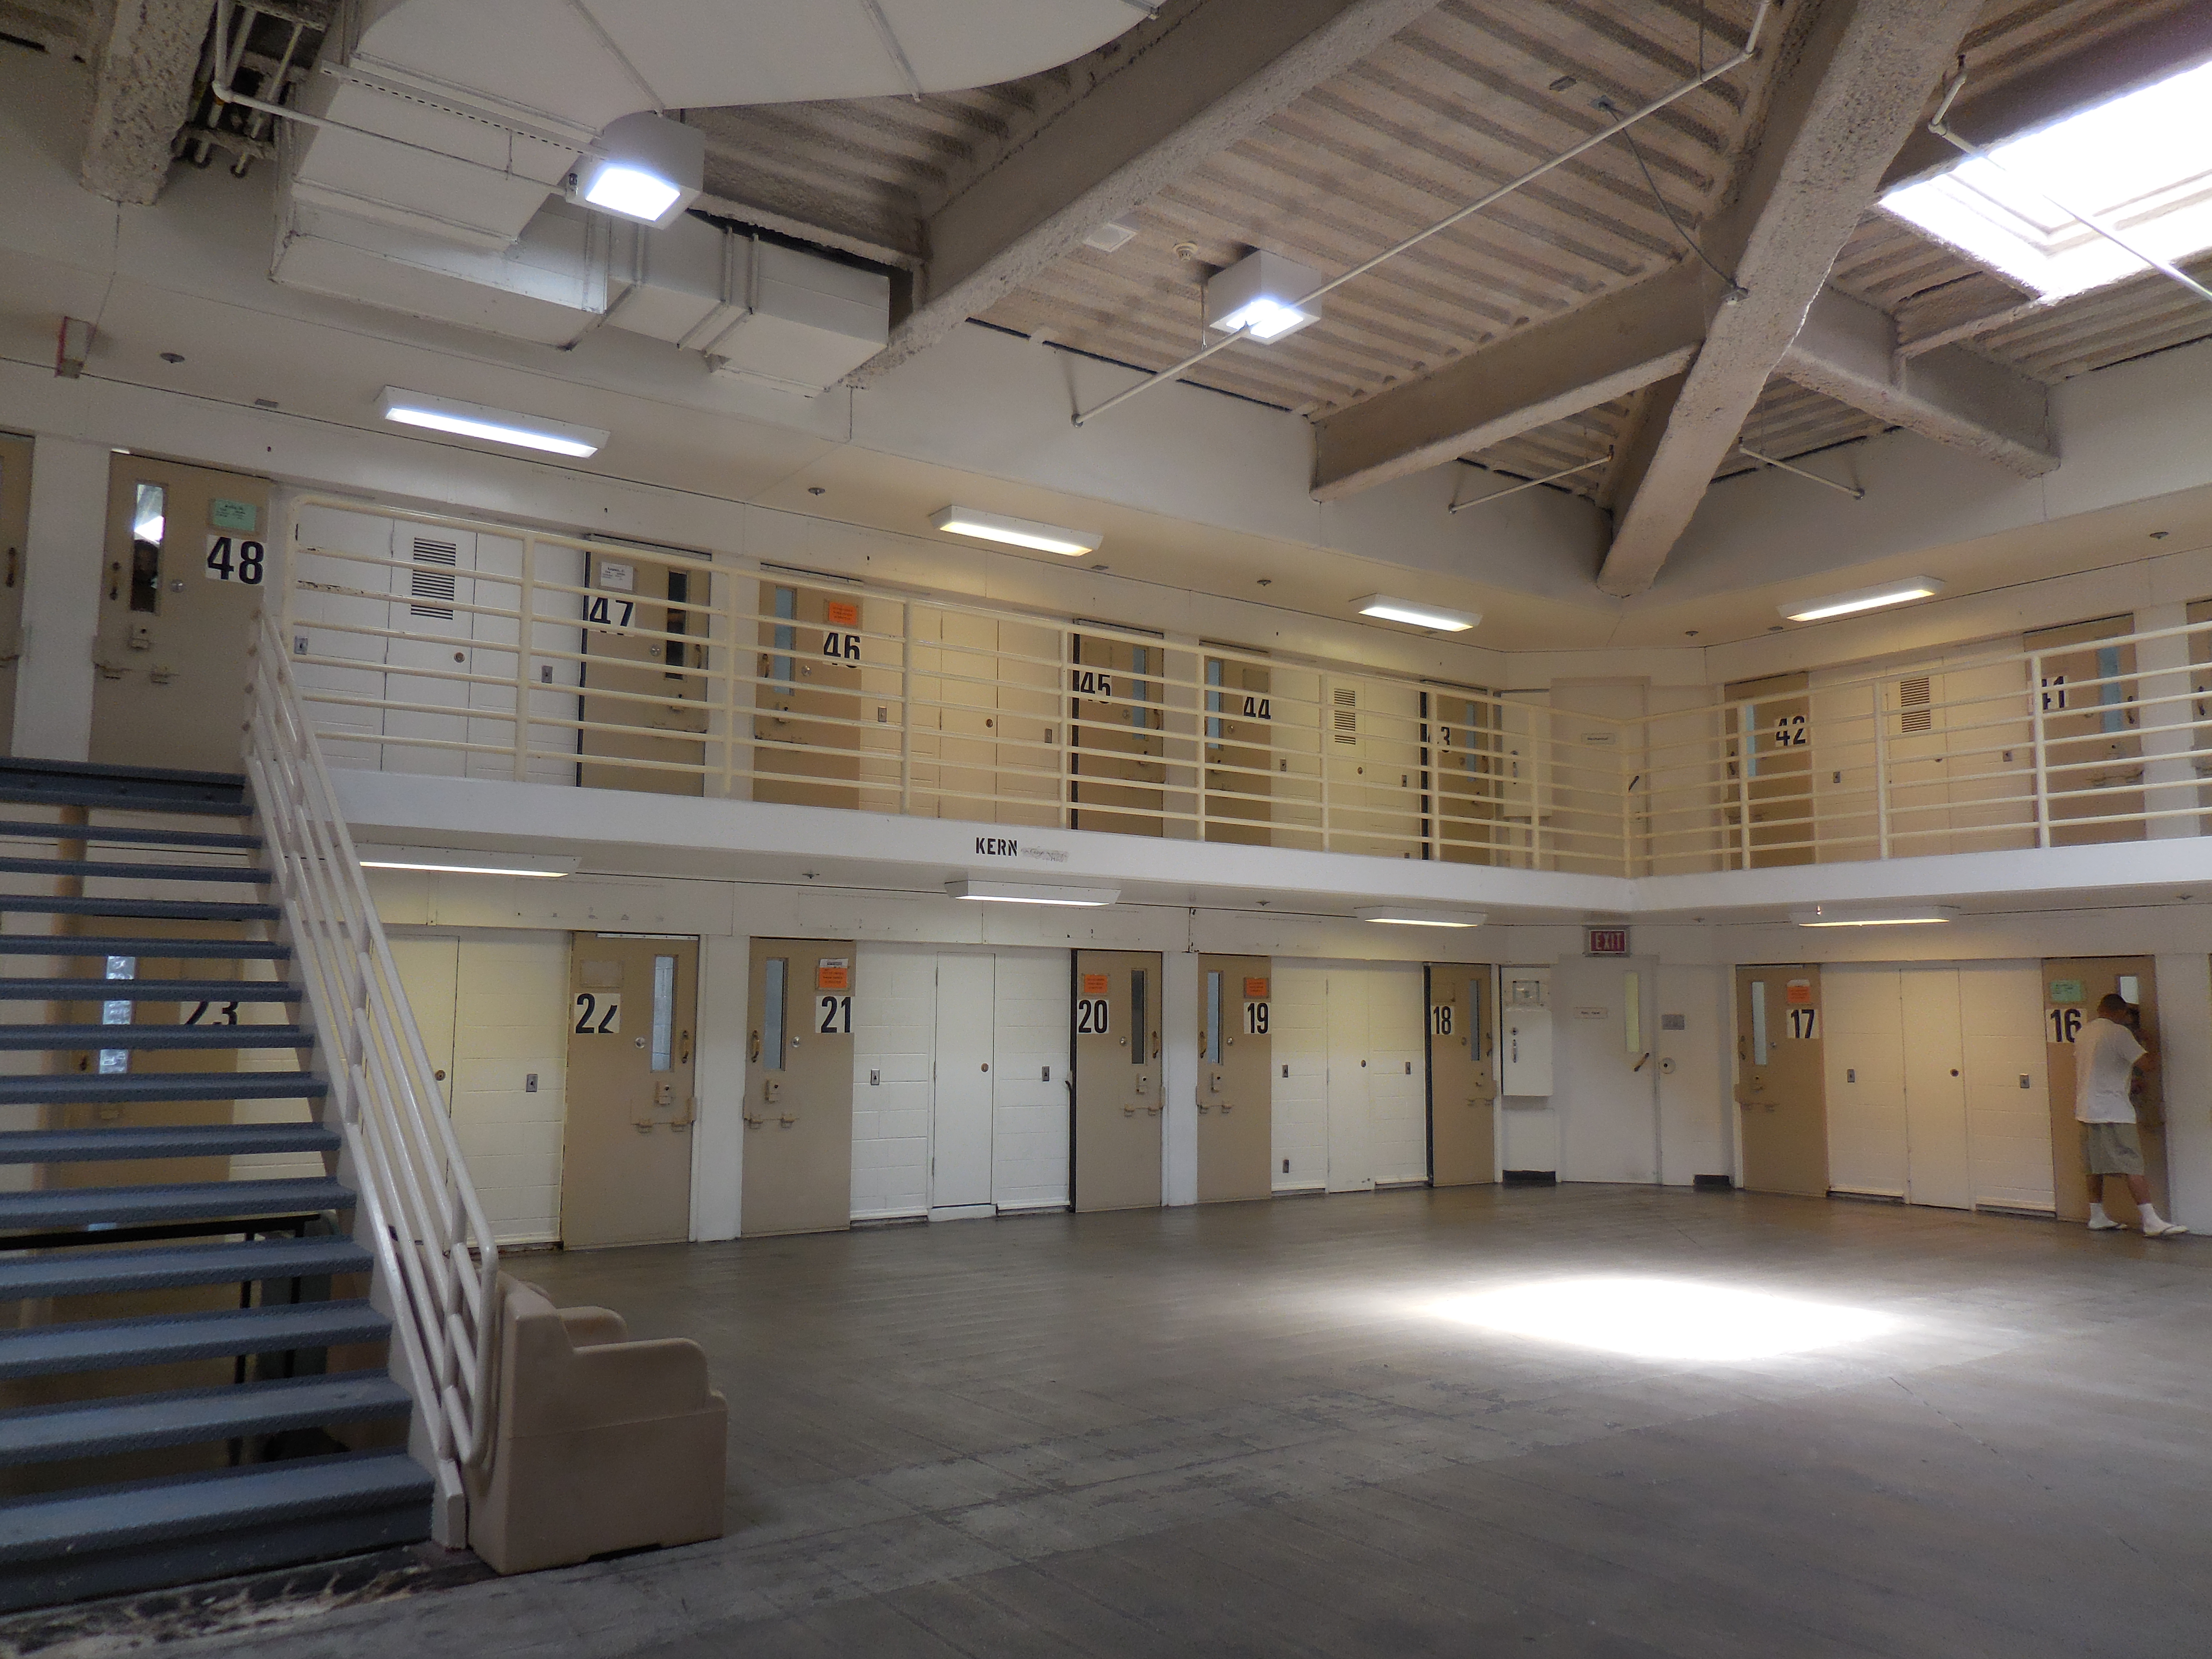 A lockdown unit at DJJ's Chad facility | CJCJ